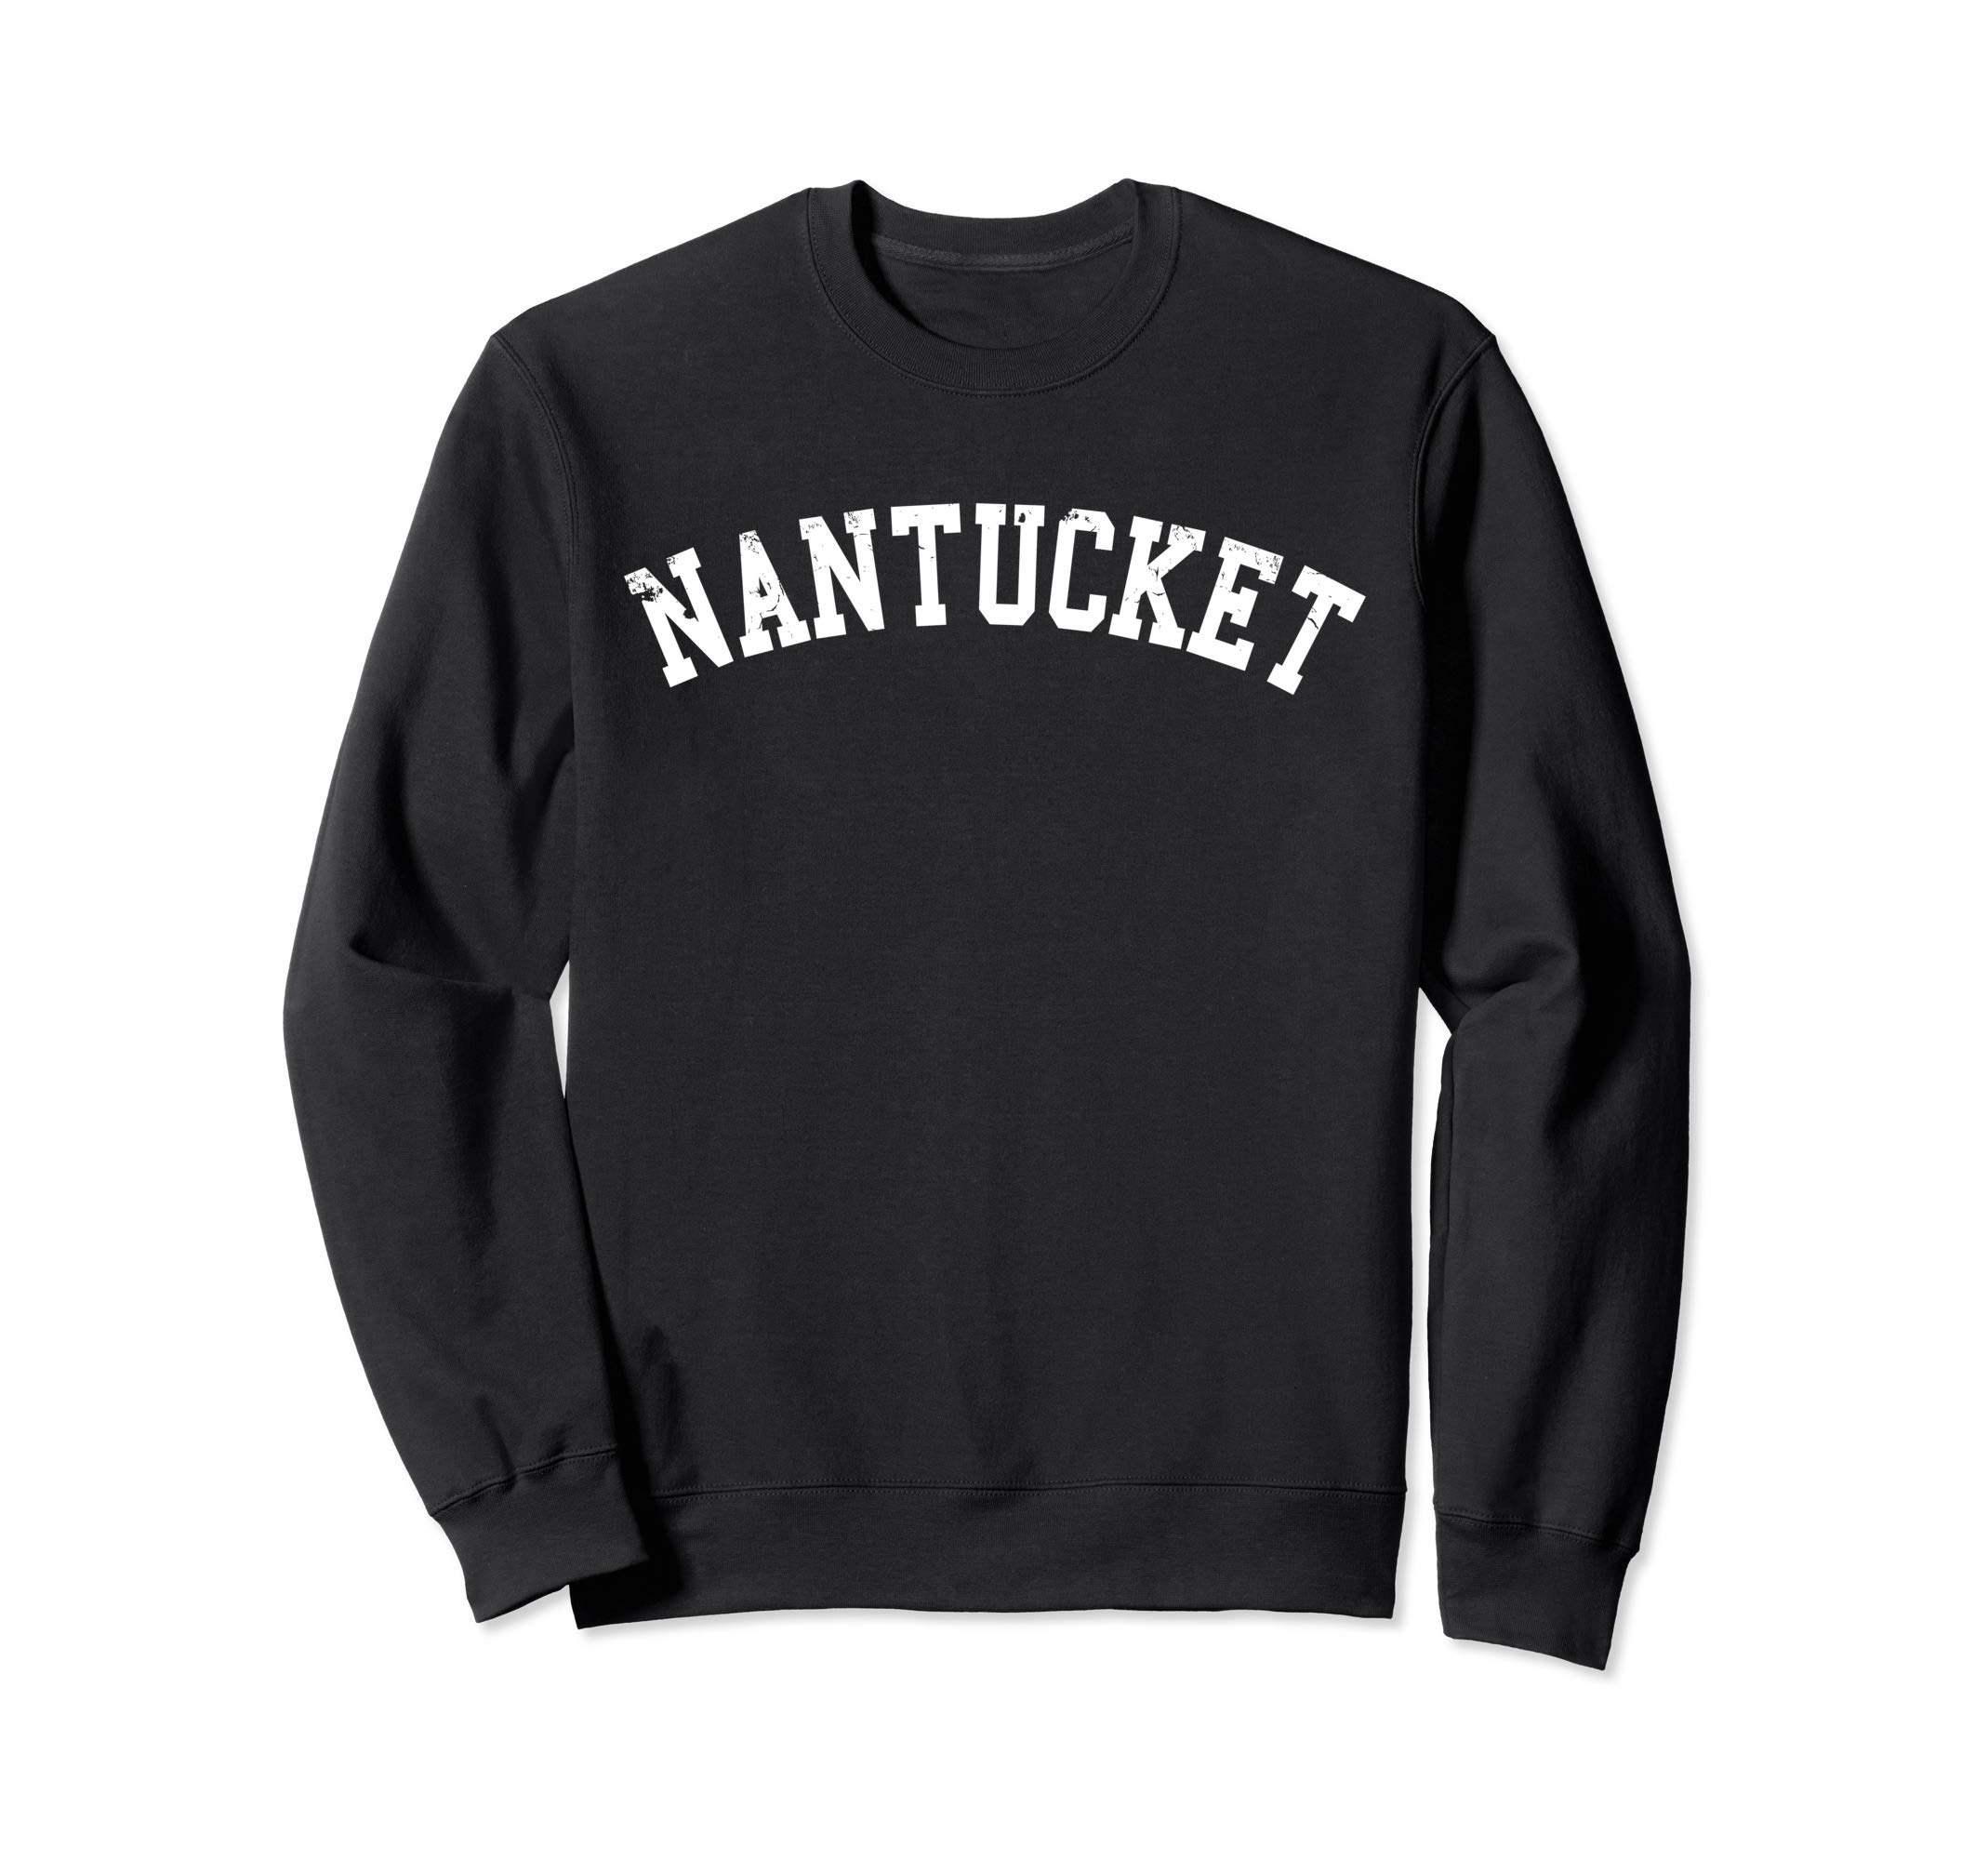 Nantucket Sweatshirt - Distressed Lettering, Fleece Pullover